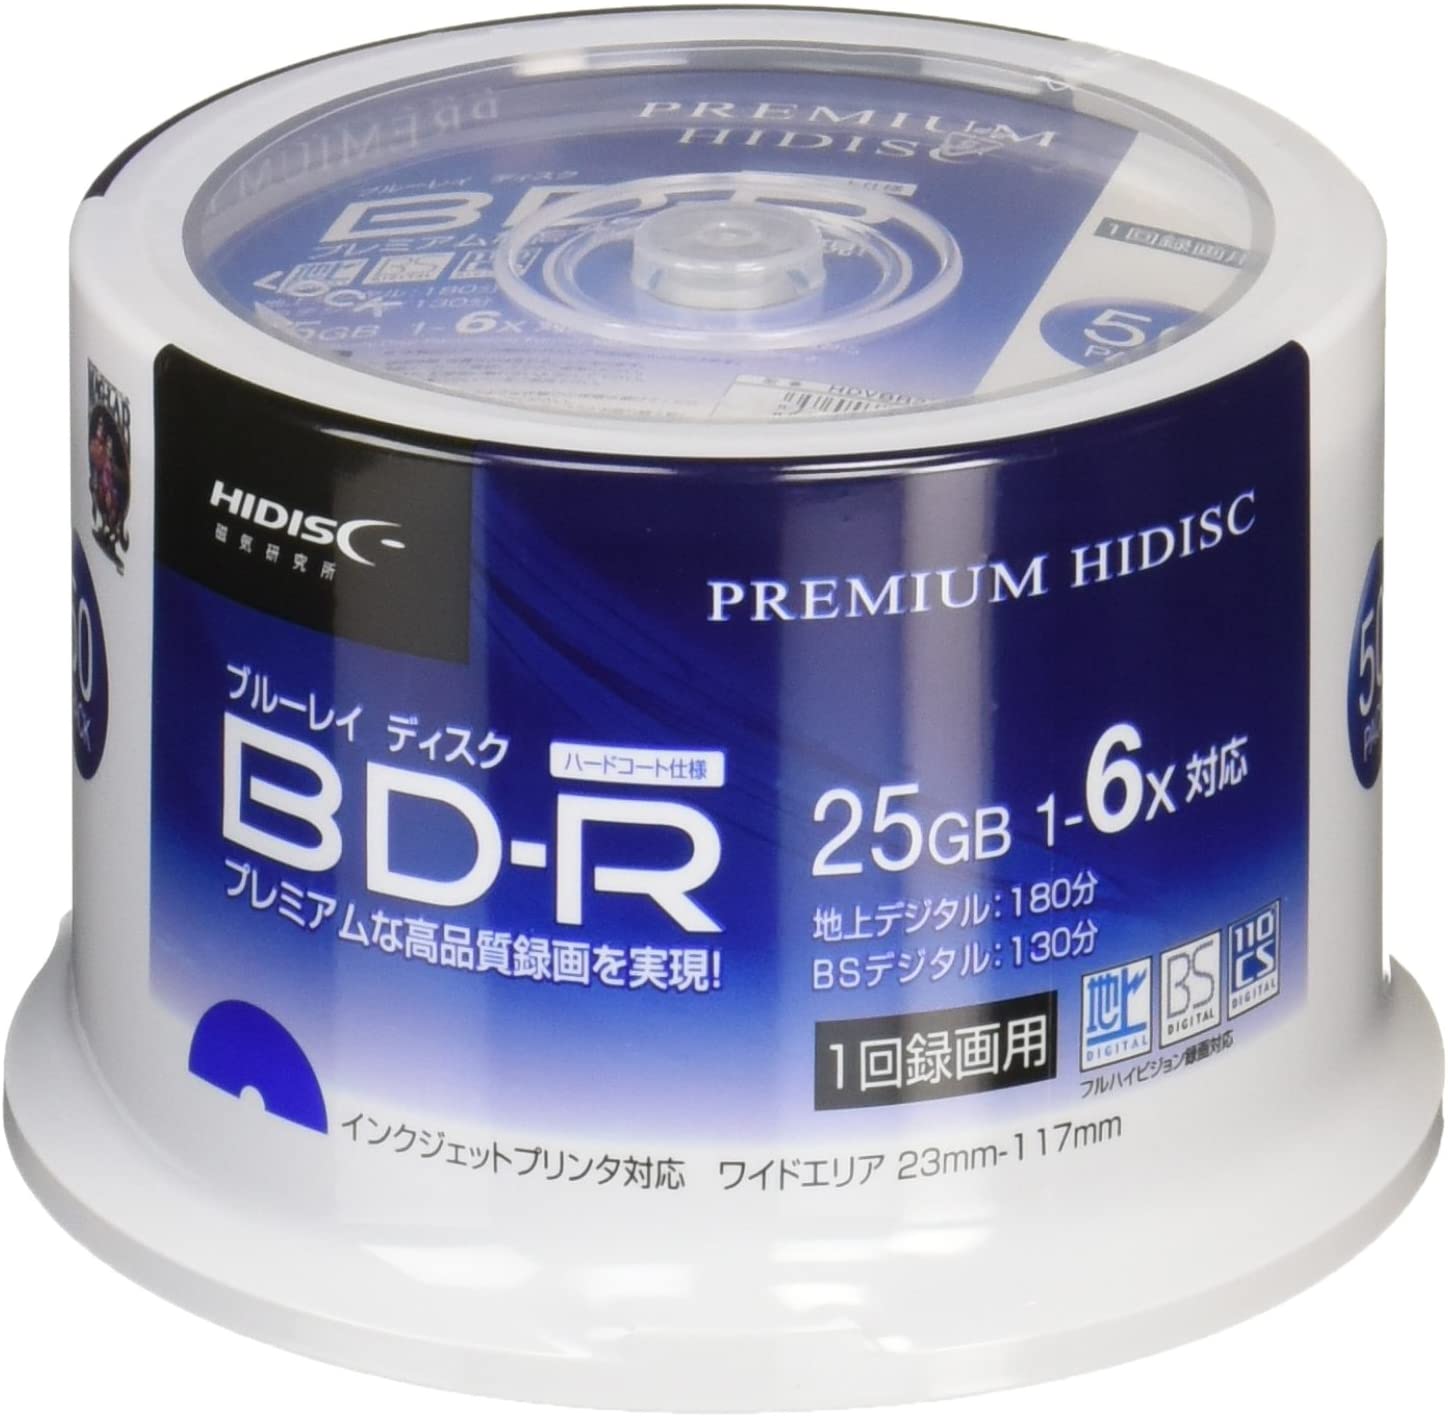 PREMIUM HIDISC BD-R 1回録画 6倍速 25GB 50枚 スピンドルケース